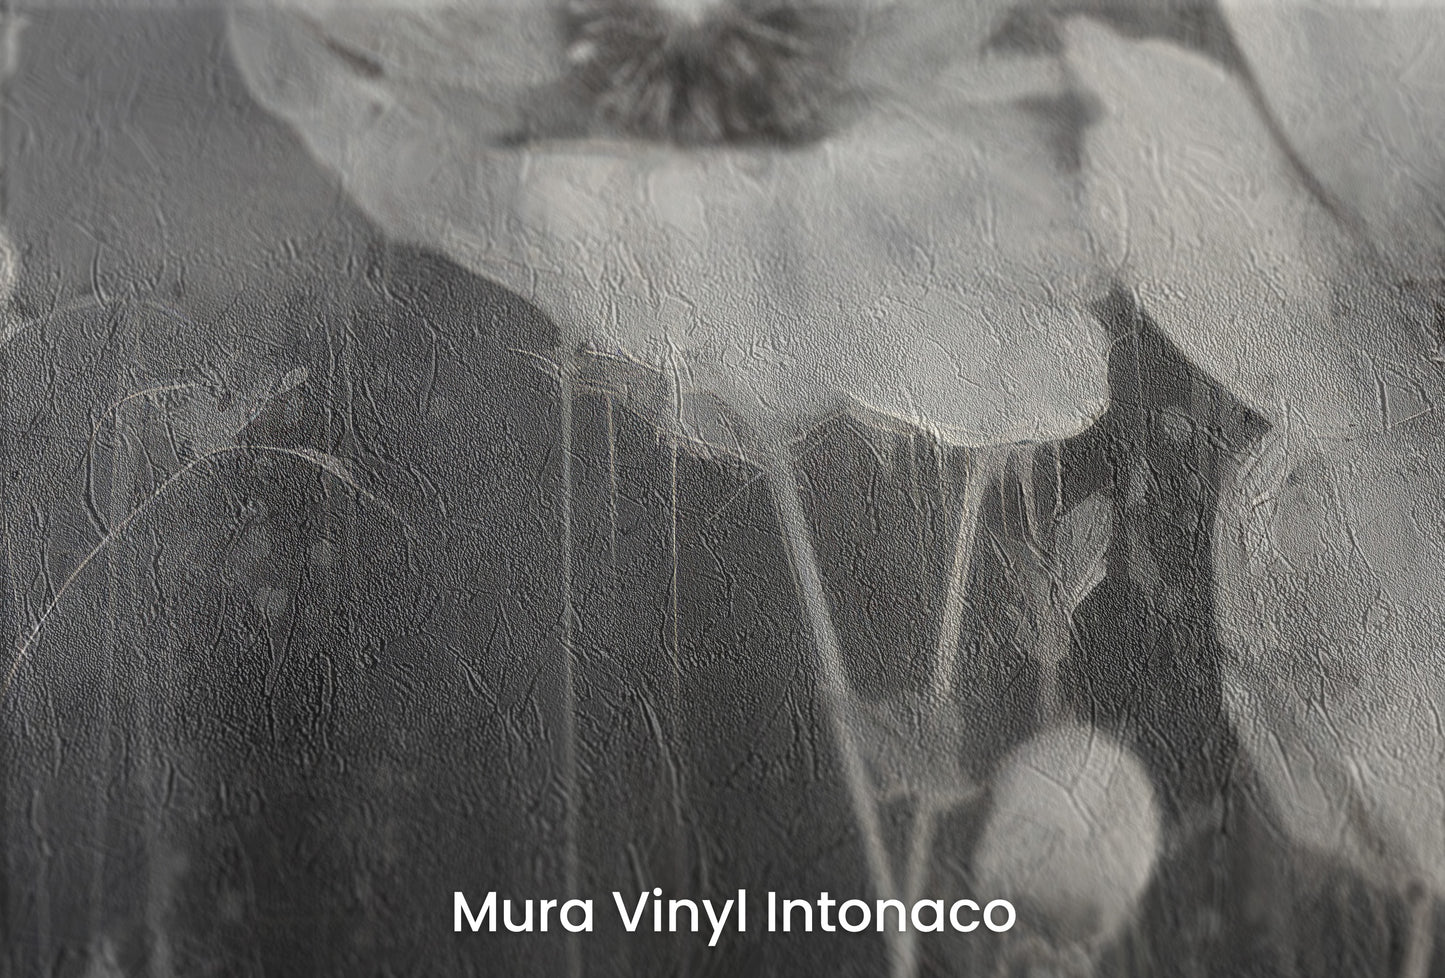 Zbliżenie na artystyczną fototapetę o nazwie NOIR FLORAL WHISPER na podłożu Mura Vinyl Intonaco - struktura tartego tynku.